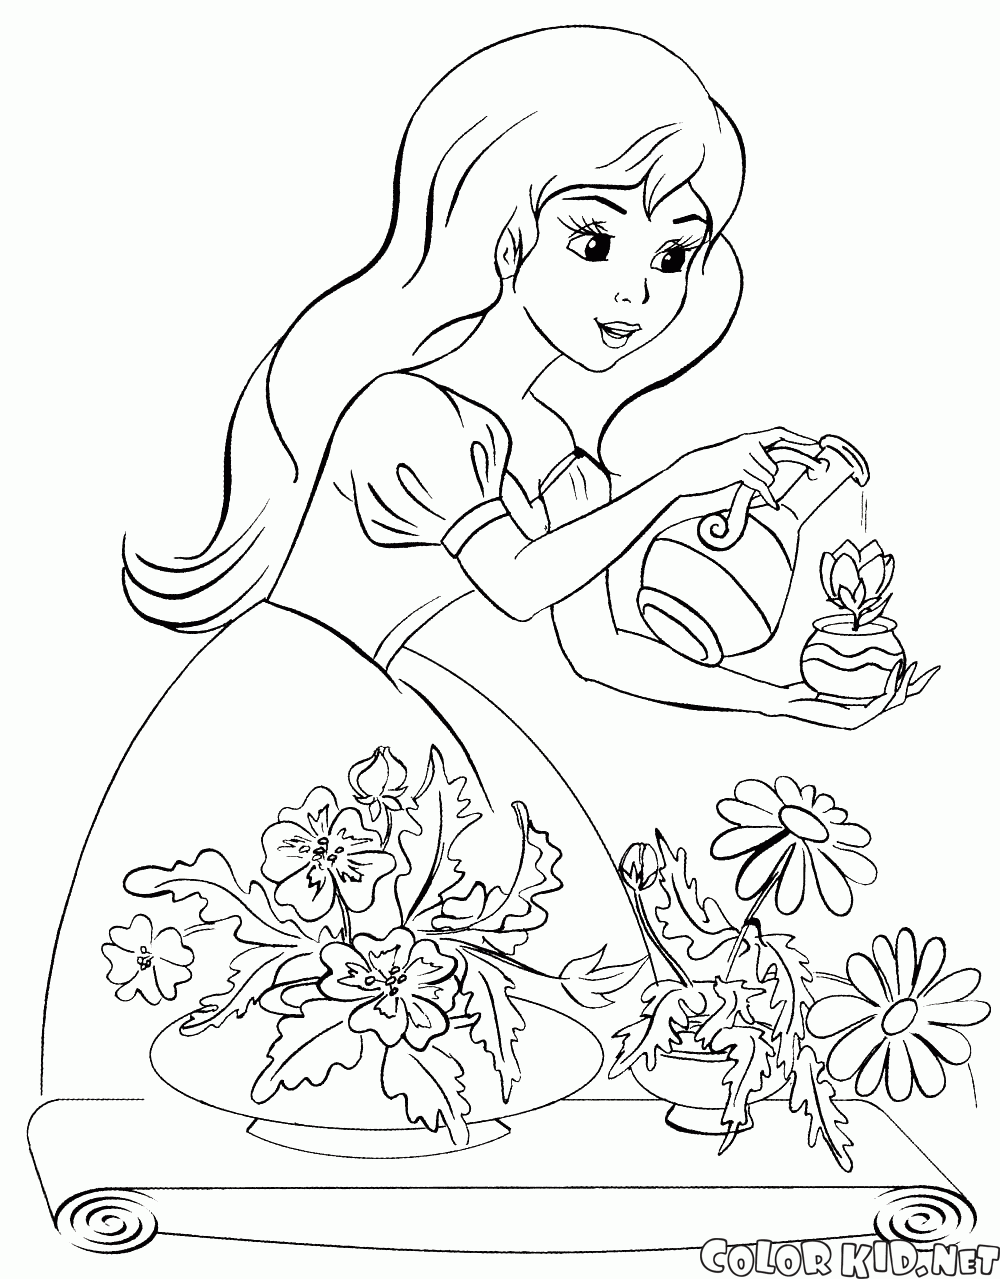 Księżniczka podlewa kwiaty